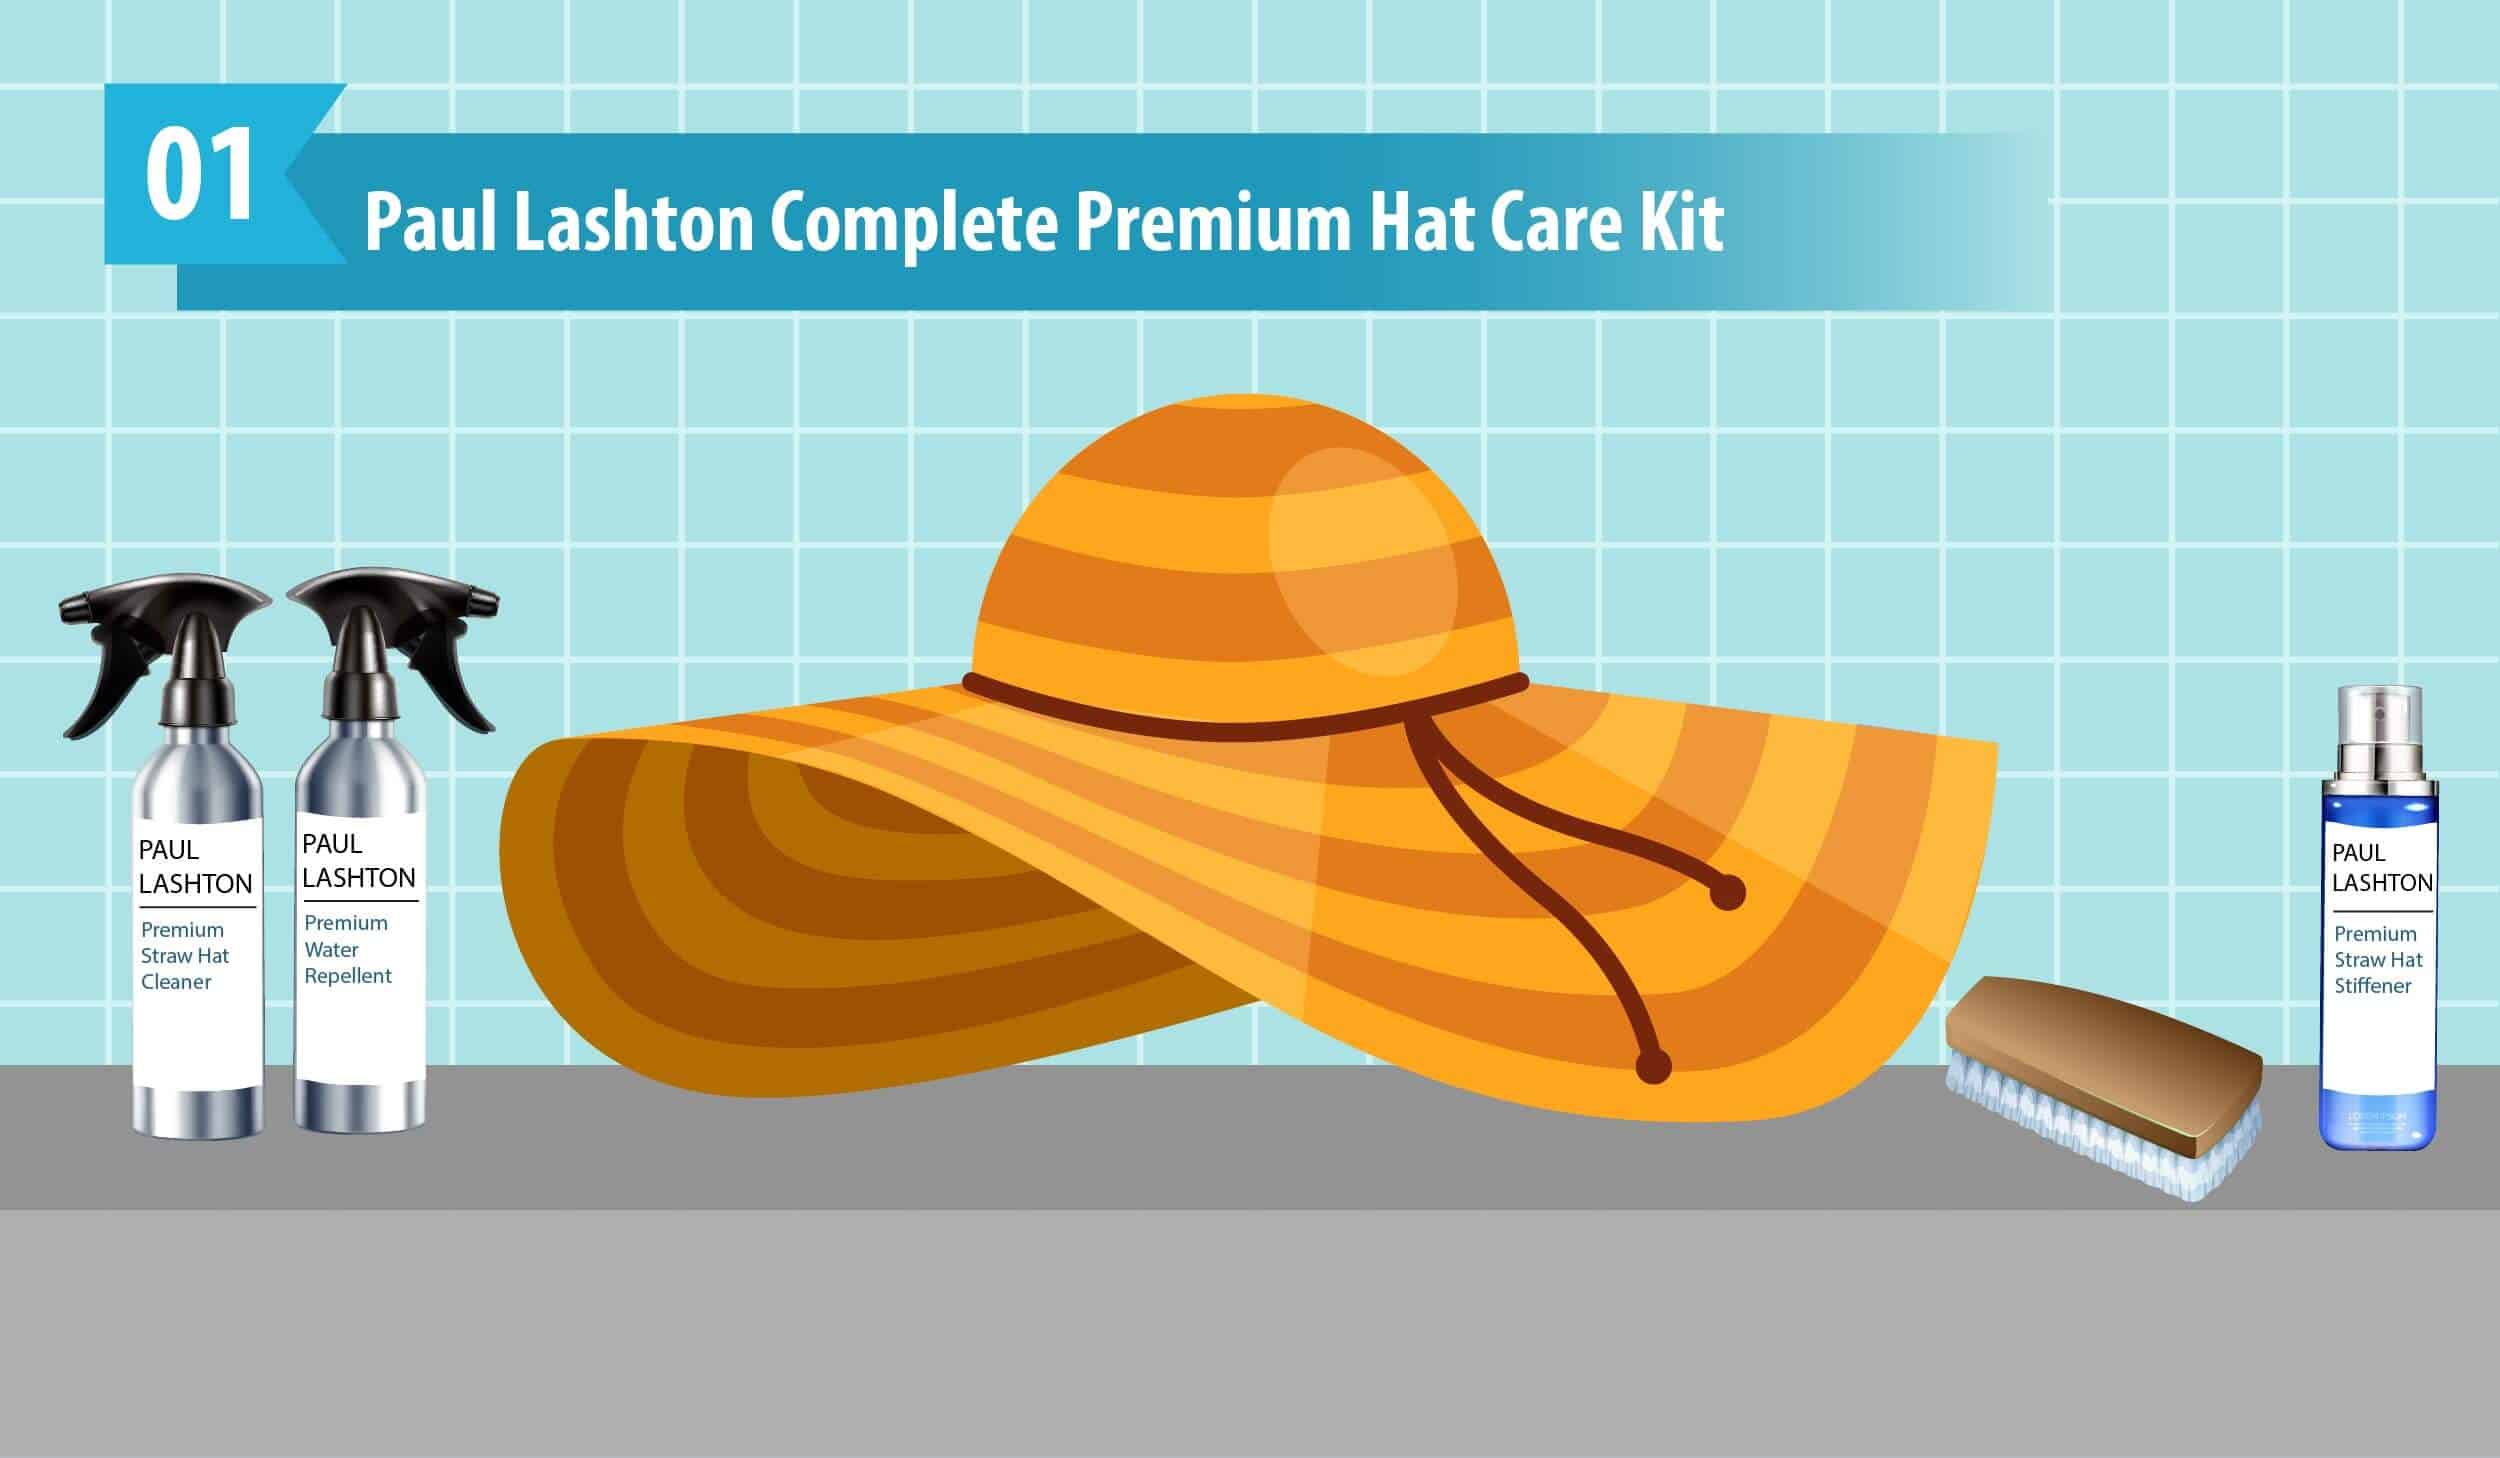 Paul Lashton Complete Premium Hat Care Kit